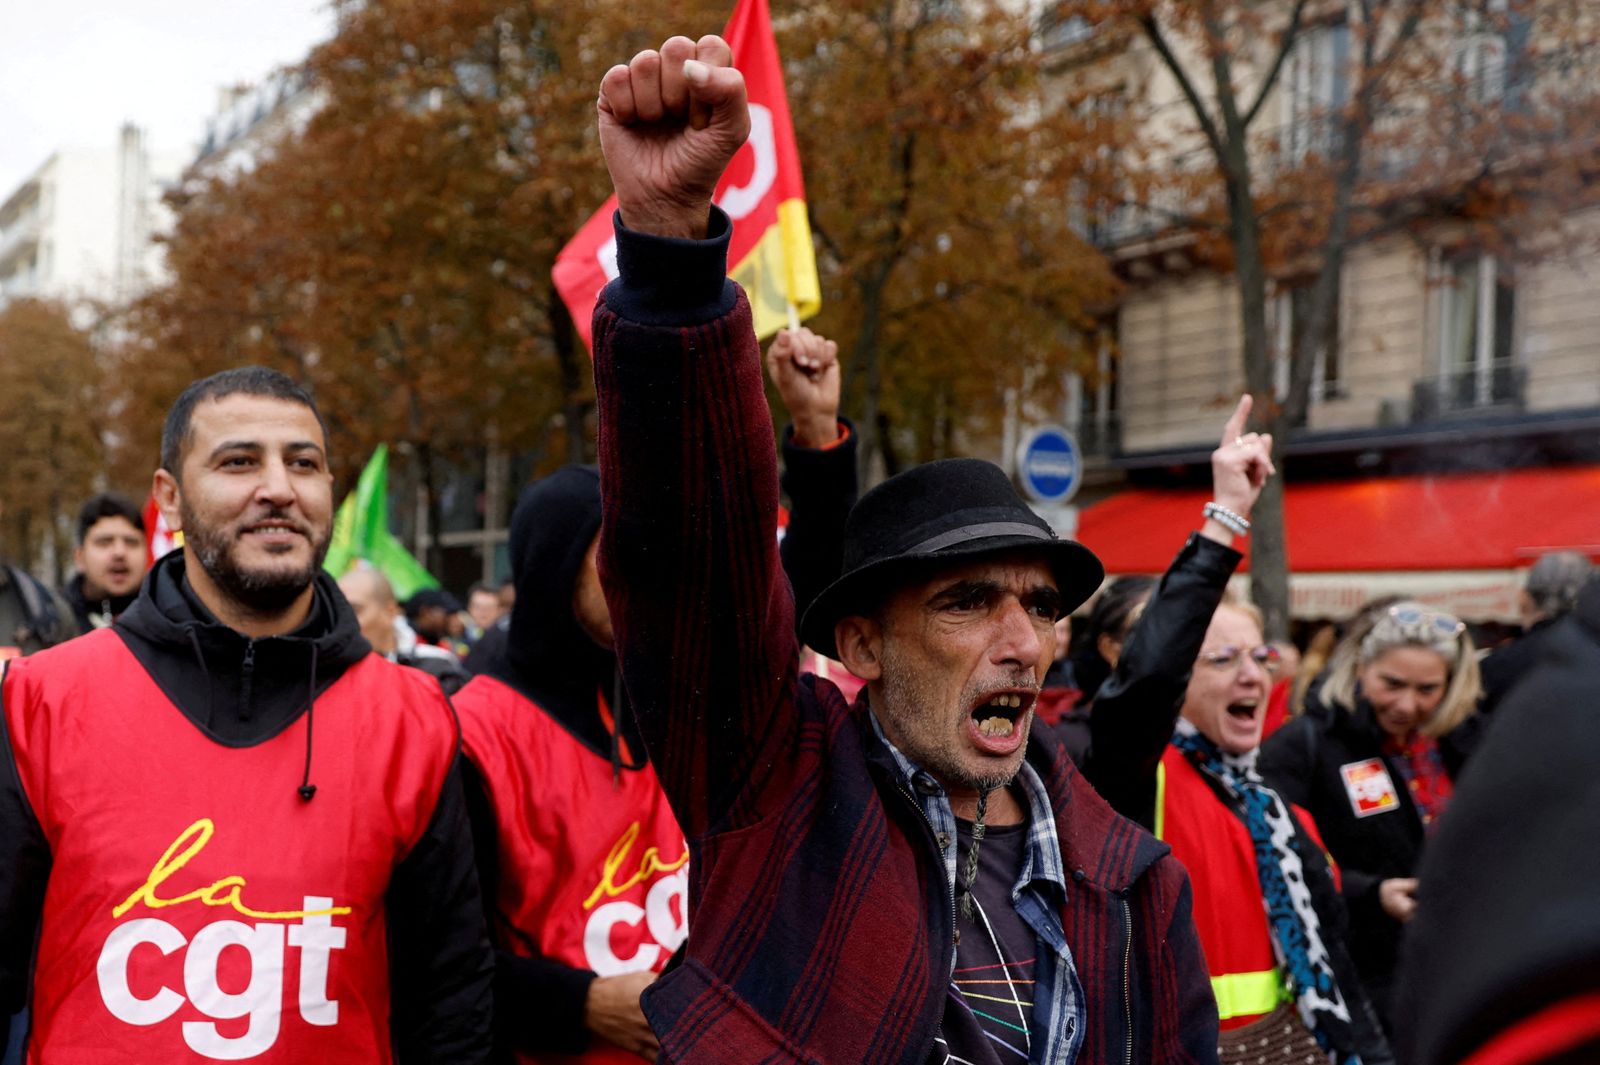 متظاهرون وعمال نقابة فرنسيين يشاركون في مظاهرة للضغط من أجل اتخاذ تدابير حكومية للتصدي للتضخم وحقوق العمال وإصلاحات-باريس 29 سبتمبر 2022.  - REUTERS